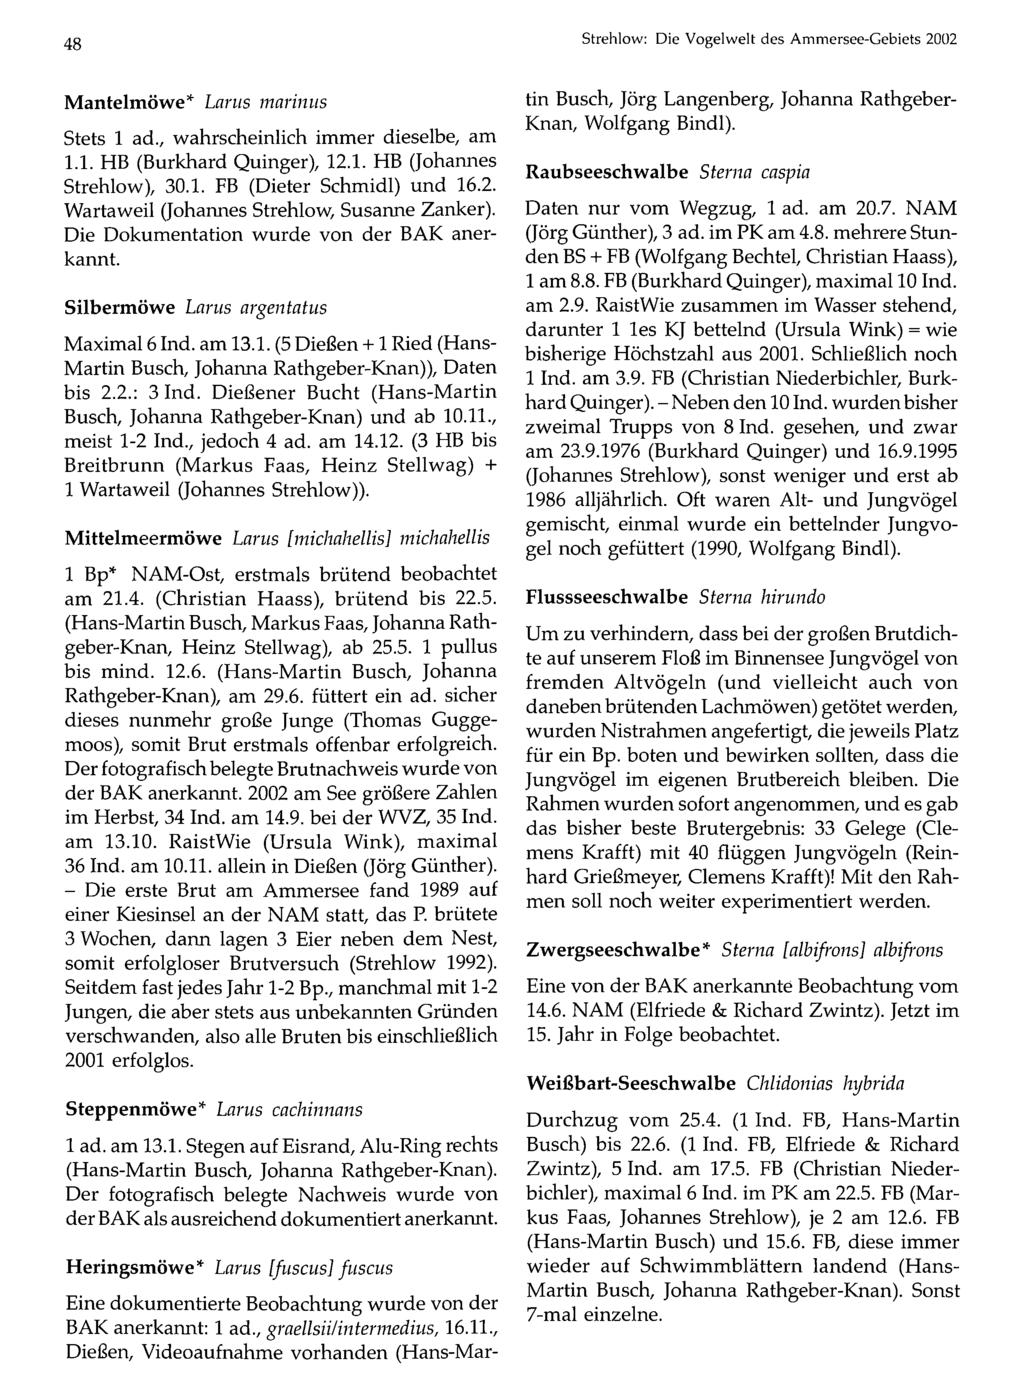 48 Ornithologische Gesellschaft Bayern, download unter Strehlow: www.biologiezentrum.at Die Vogel weit des Ammersee-Gebiets 2002 Mantelmöwe* Larus marinus Stets 1 ad.